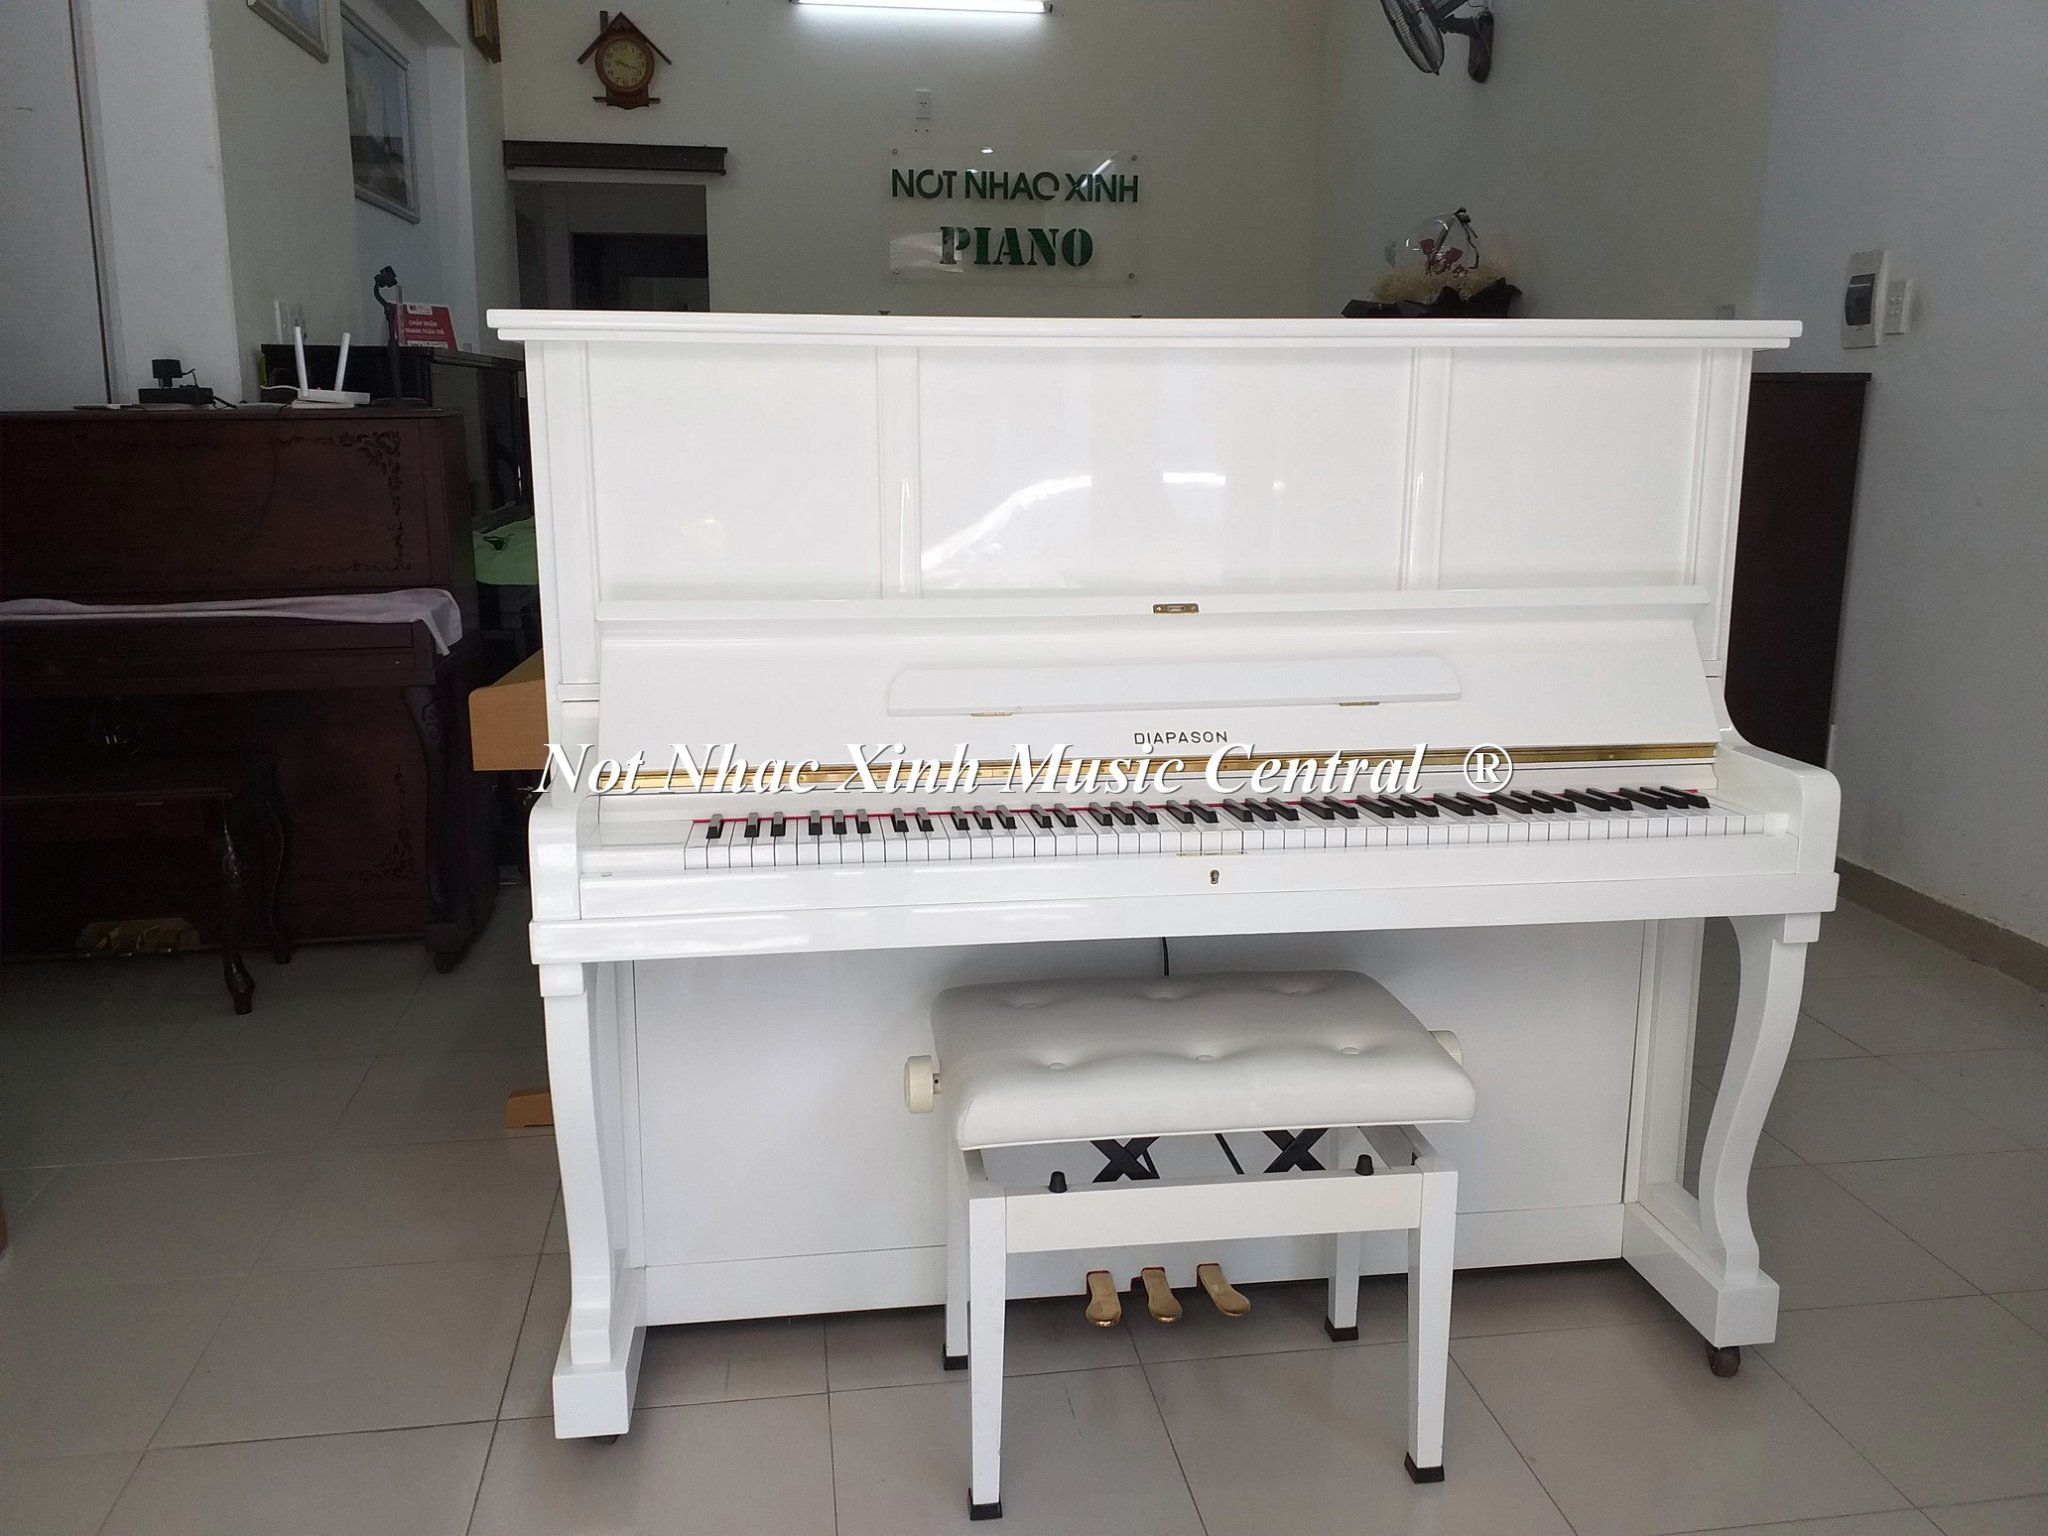 Piano Nốt Nhạc Xinh Đà Nẵng